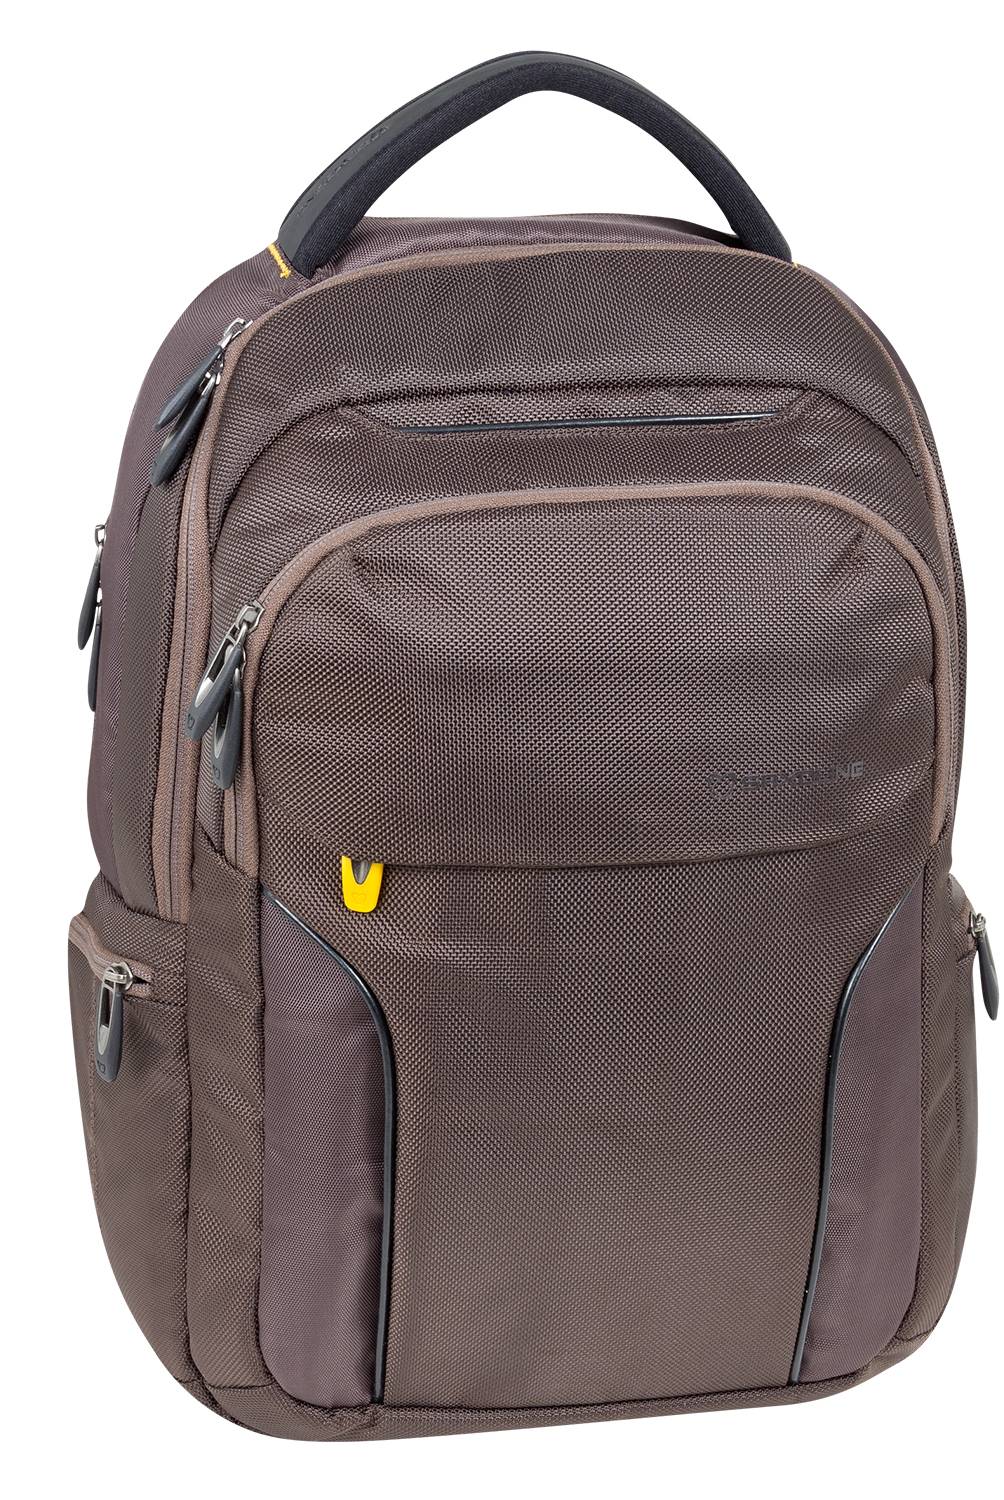 Saxoline - Laptop Backpack Nikkei 492 Tabaco